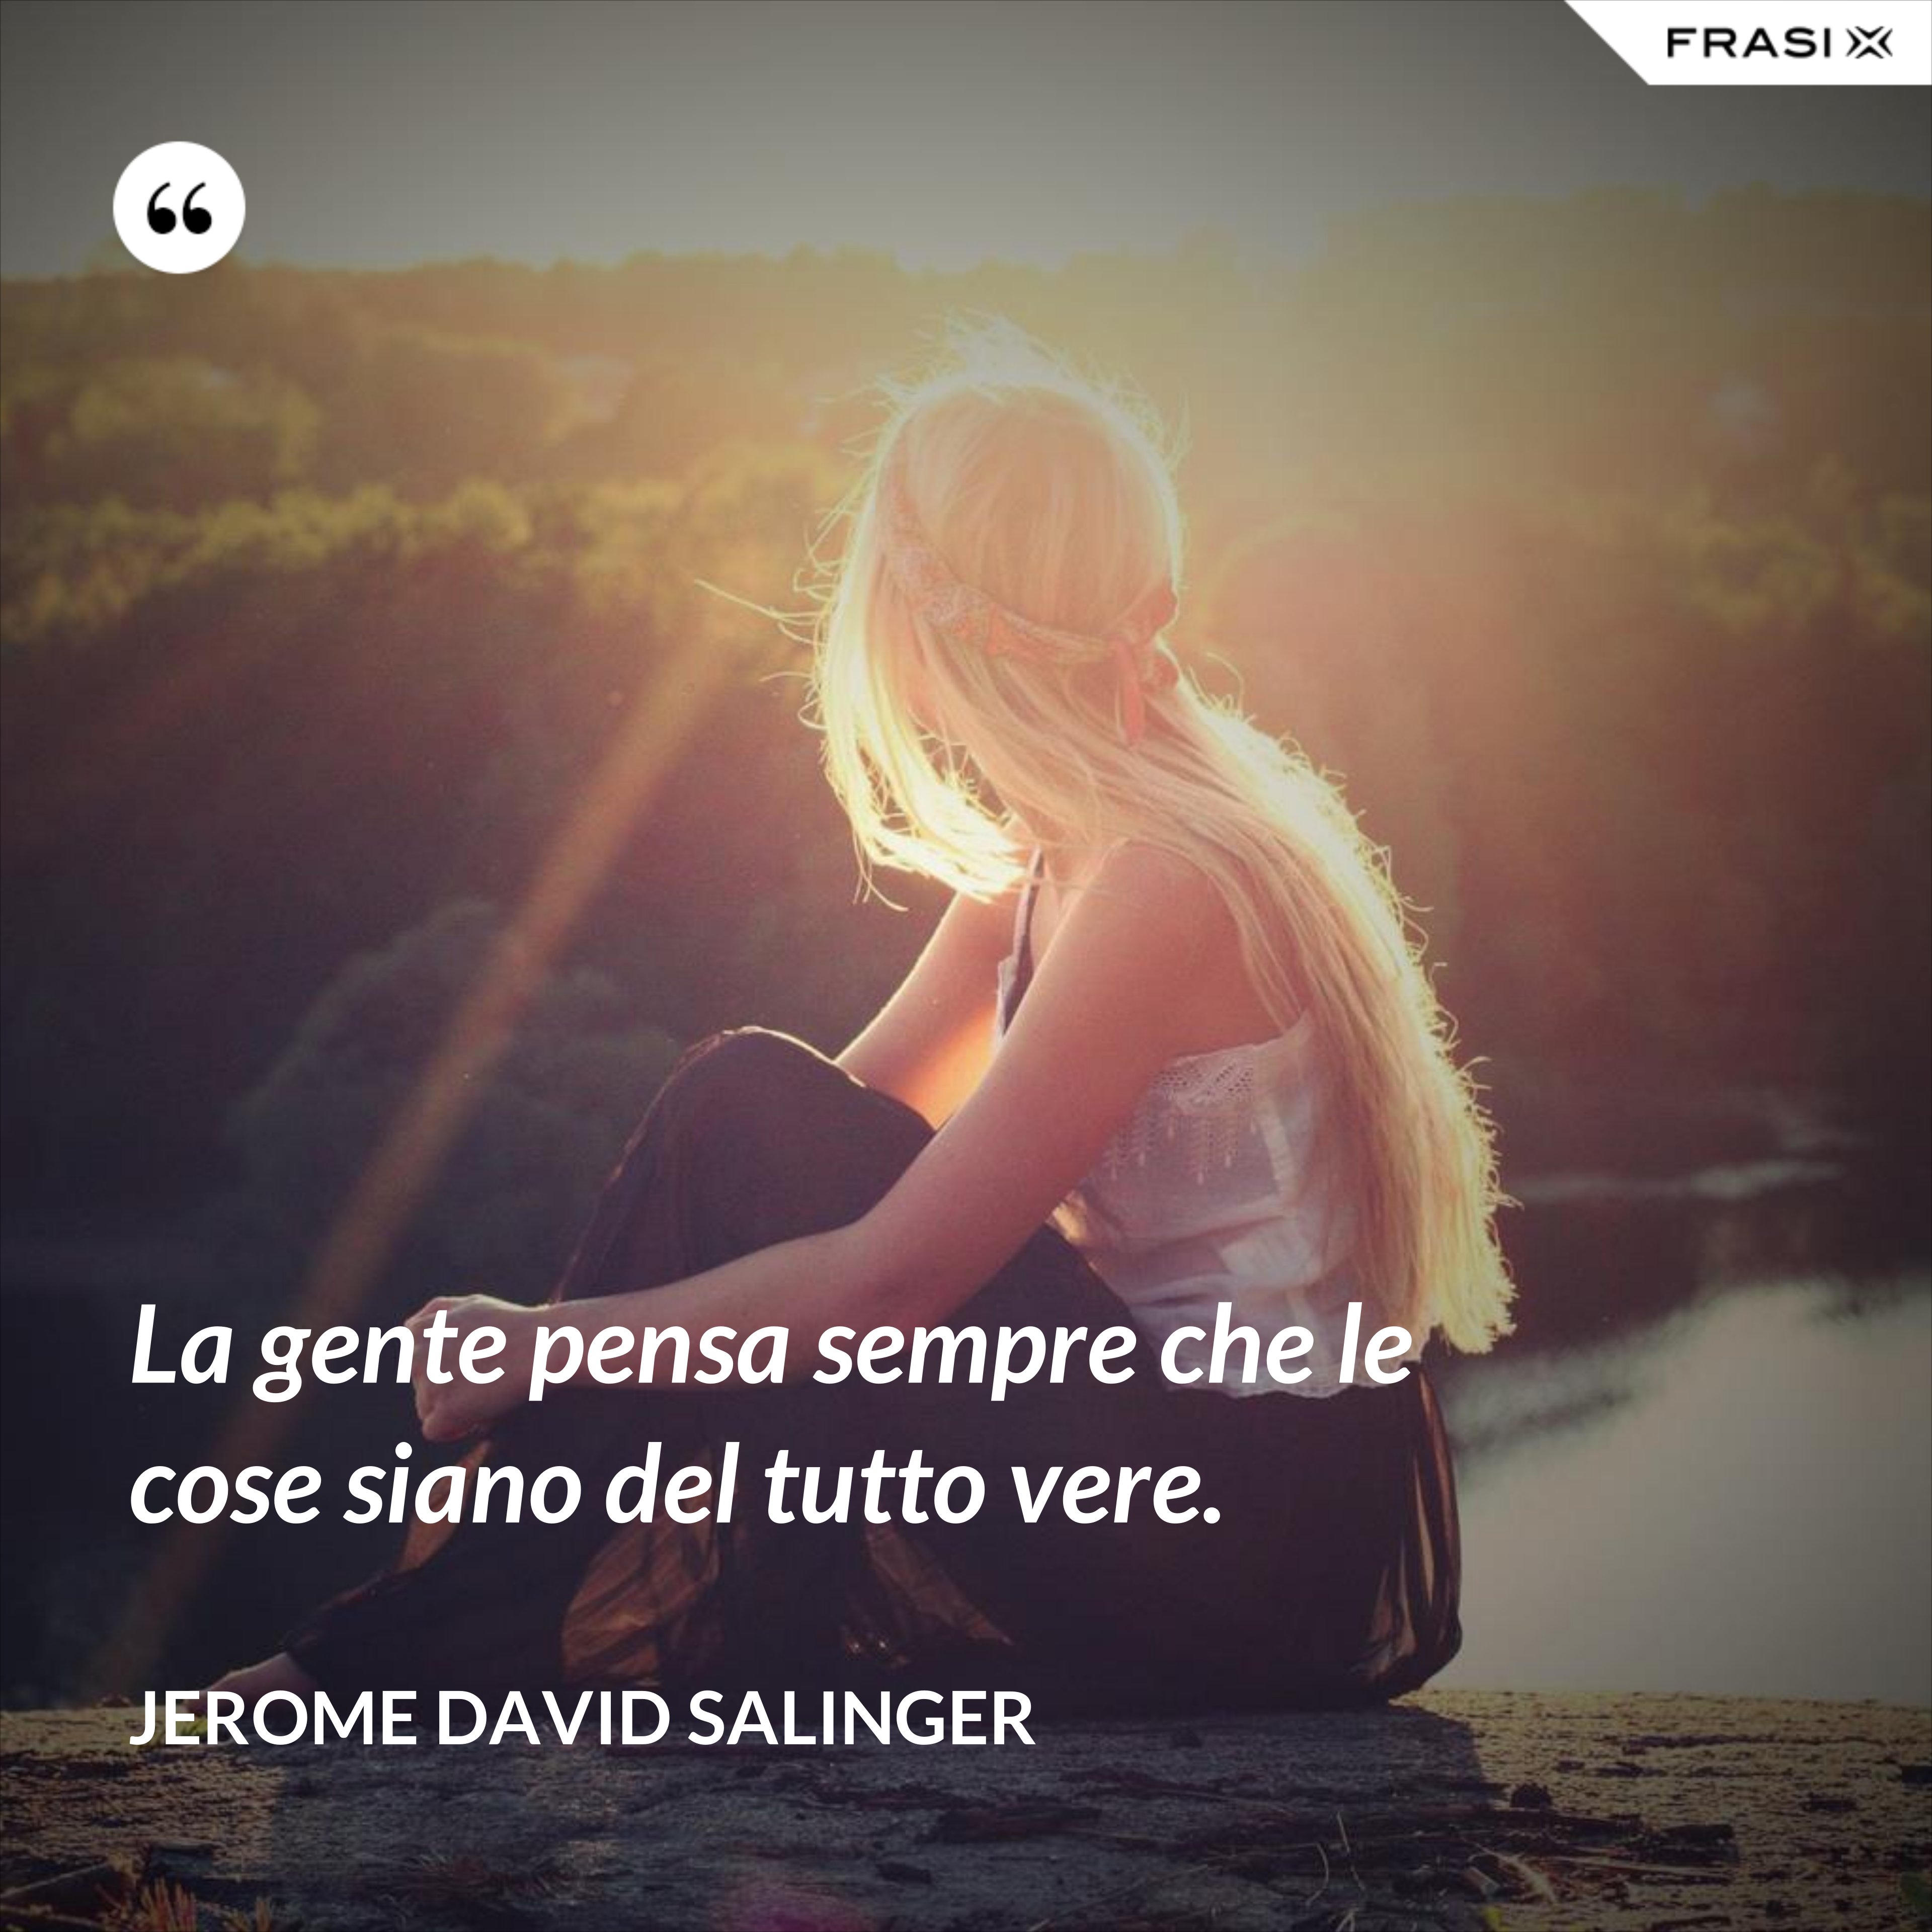 La gente pensa sempre che le cose siano del tutto vere. - Jerome David Salinger